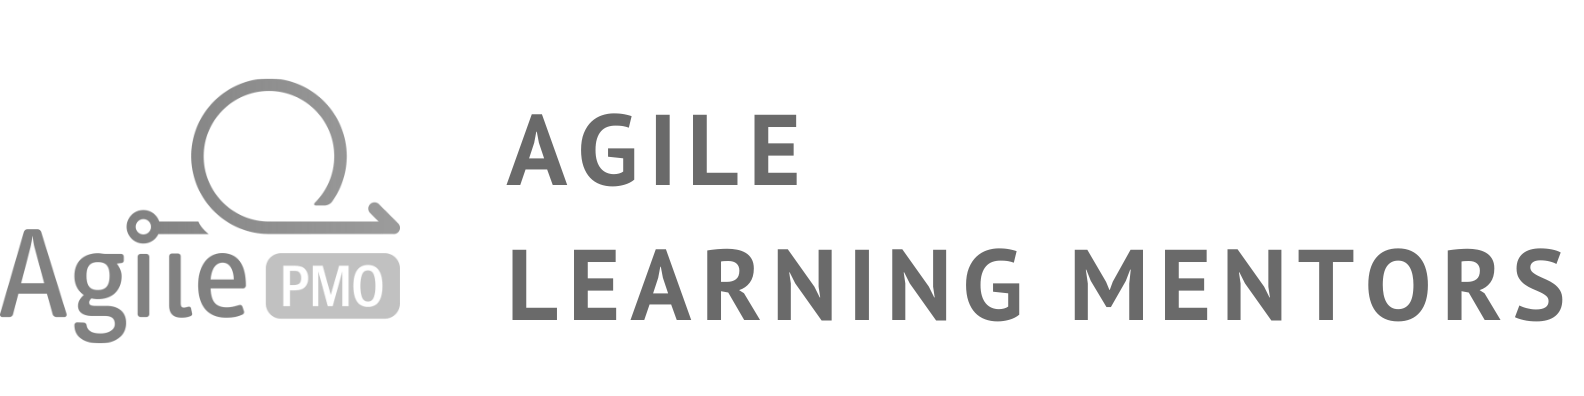 AgilePMO Agile Learning Mentors logo